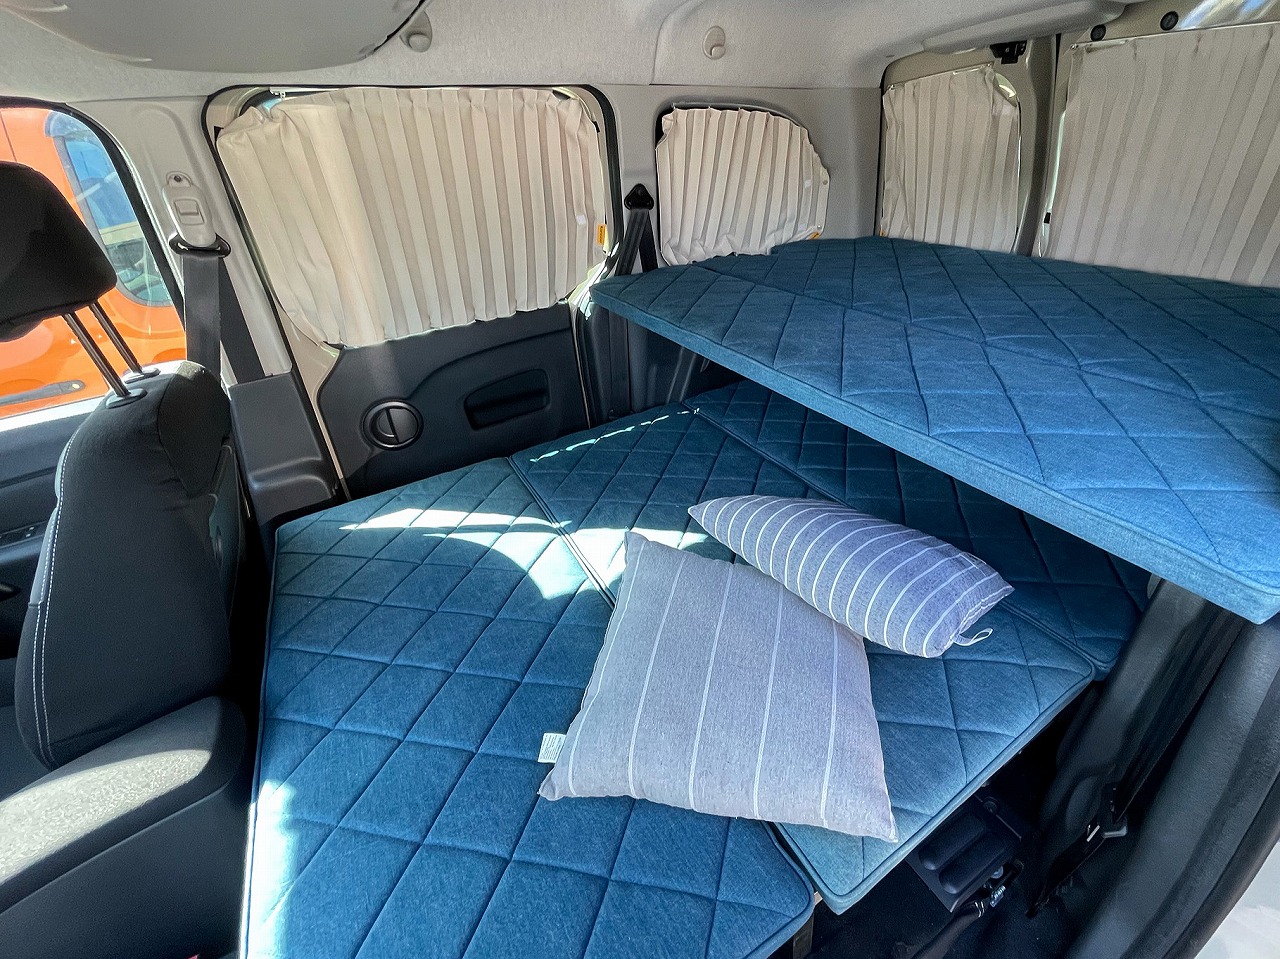 カングーで車中泊を。ベッドキット体験談その⑤ | News & Blog 